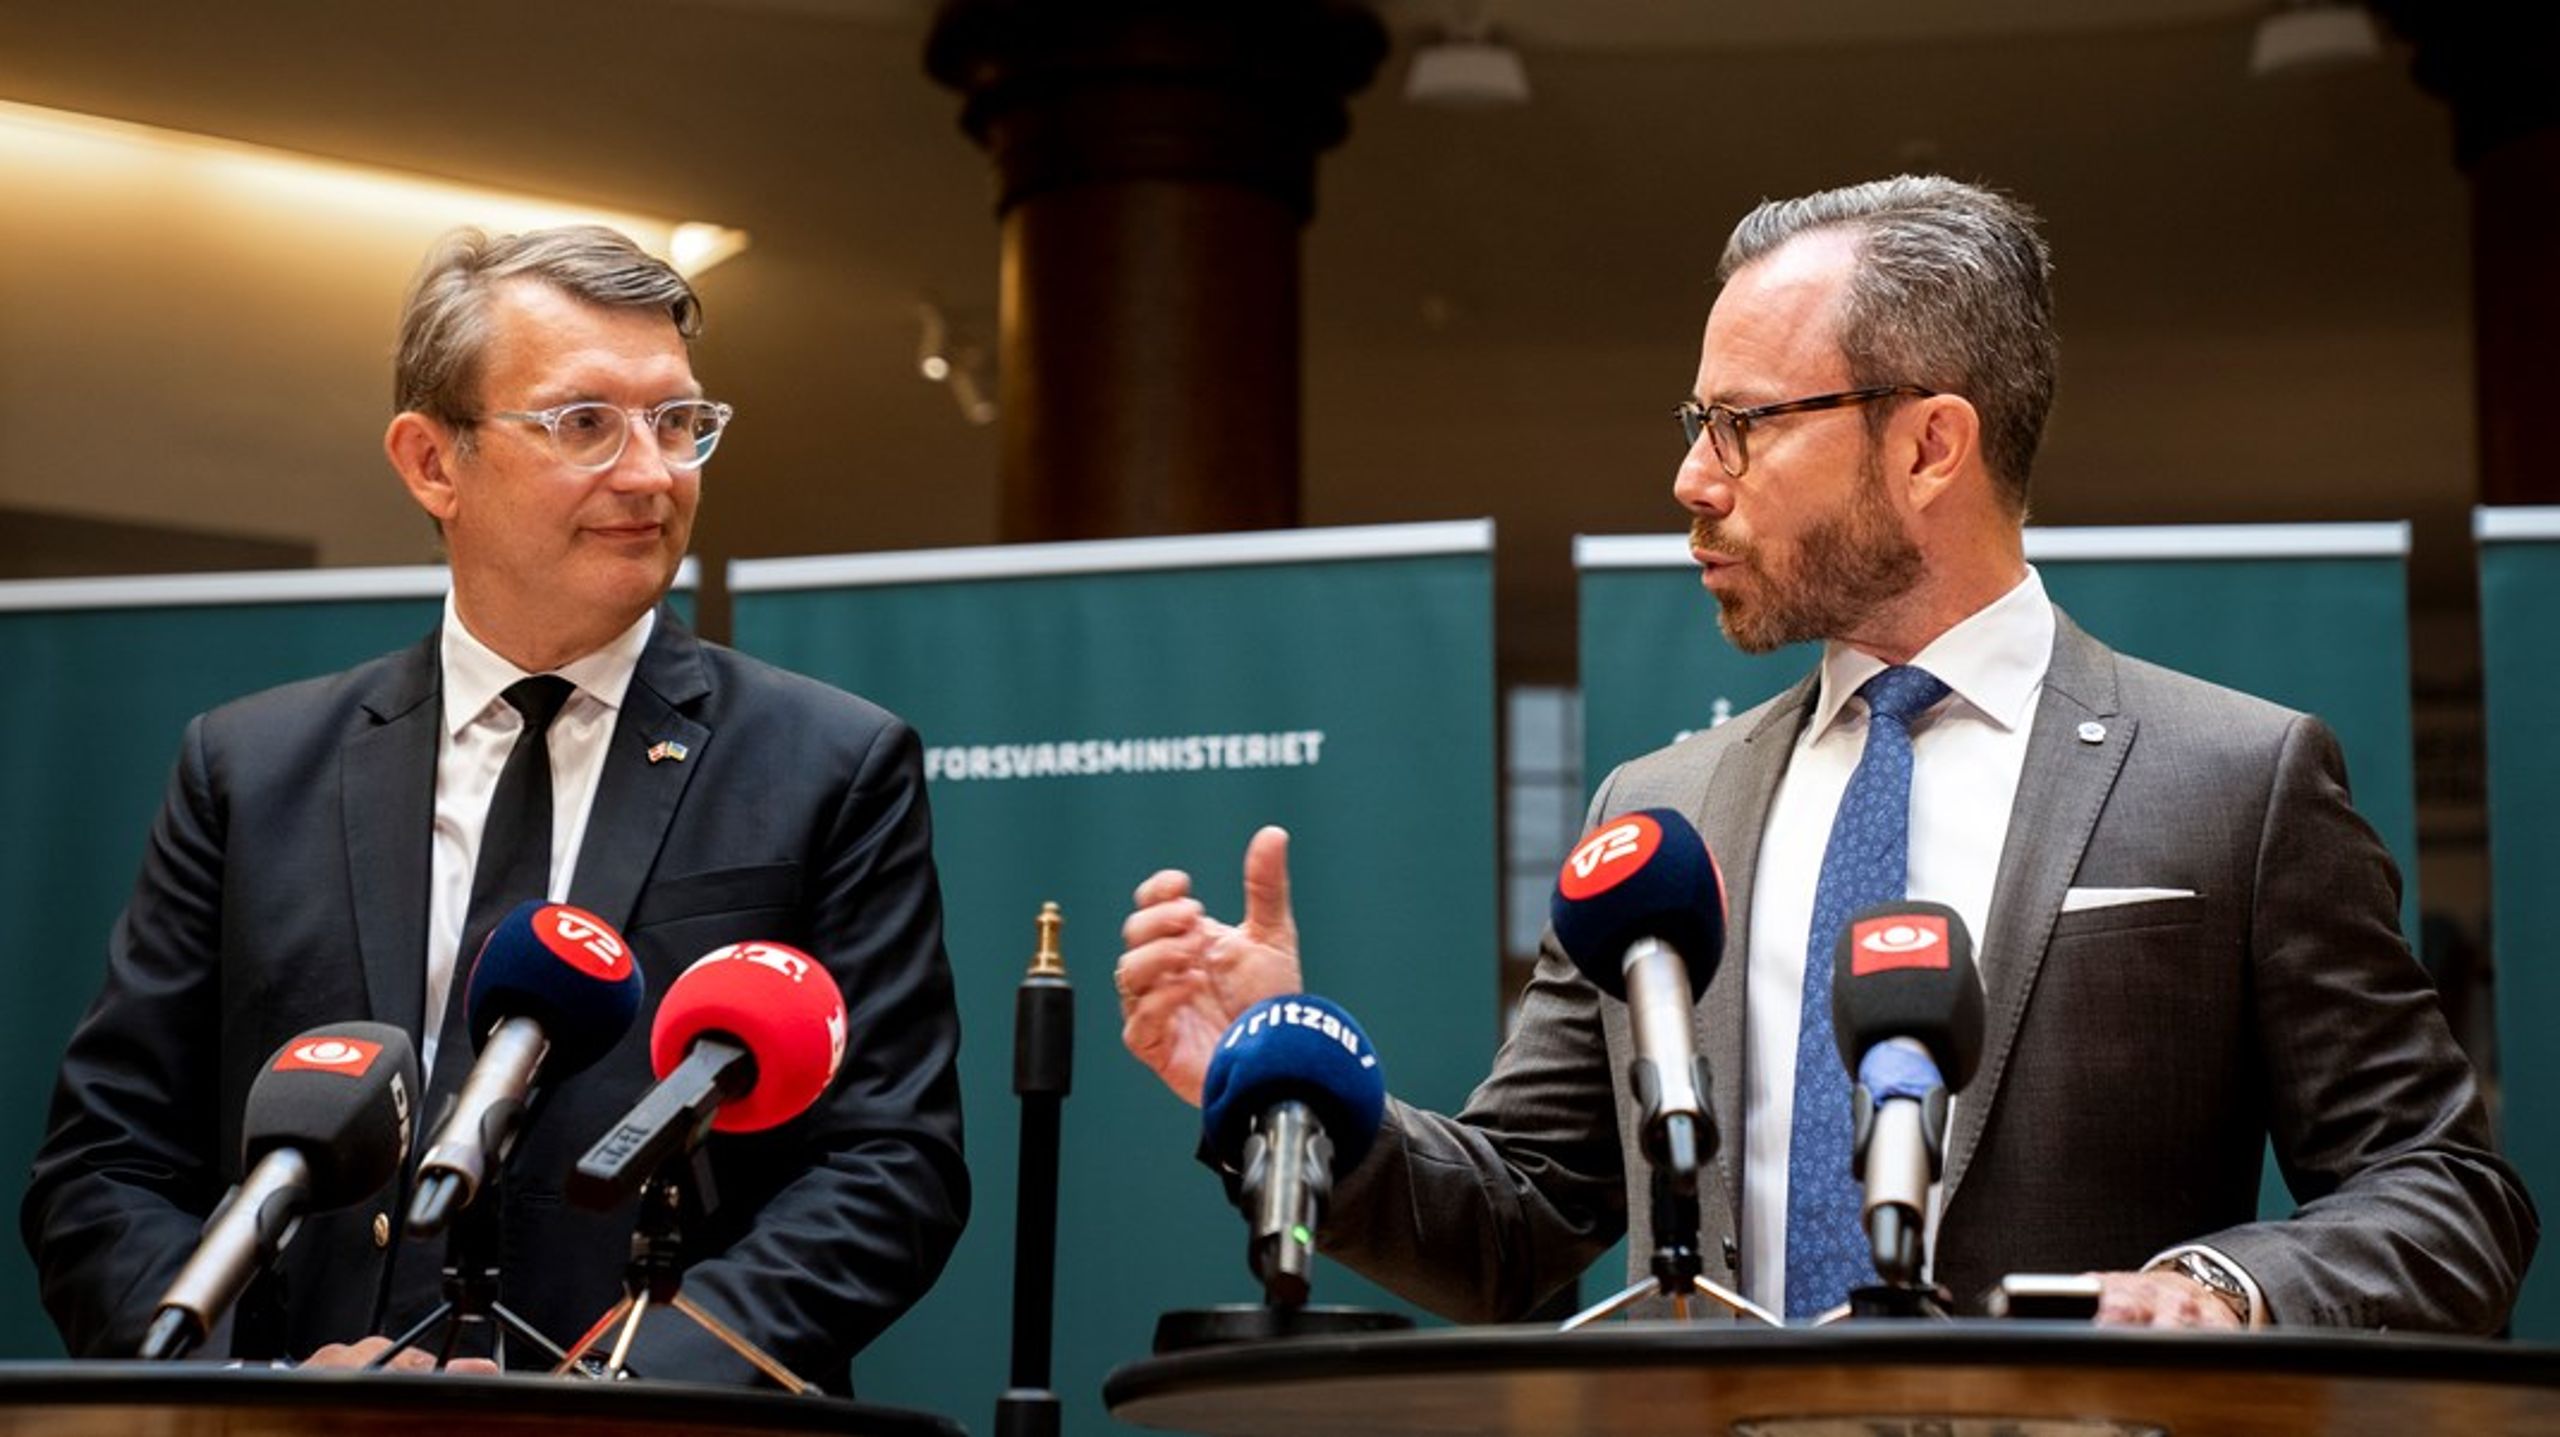 Troels Lund Poulsen (till vänster) och&nbsp;&nbsp;Jakob Ellemann-Jensen (till höger)&nbsp;under tisdagens presskonferens i det danska&nbsp;försvarsministeriet.